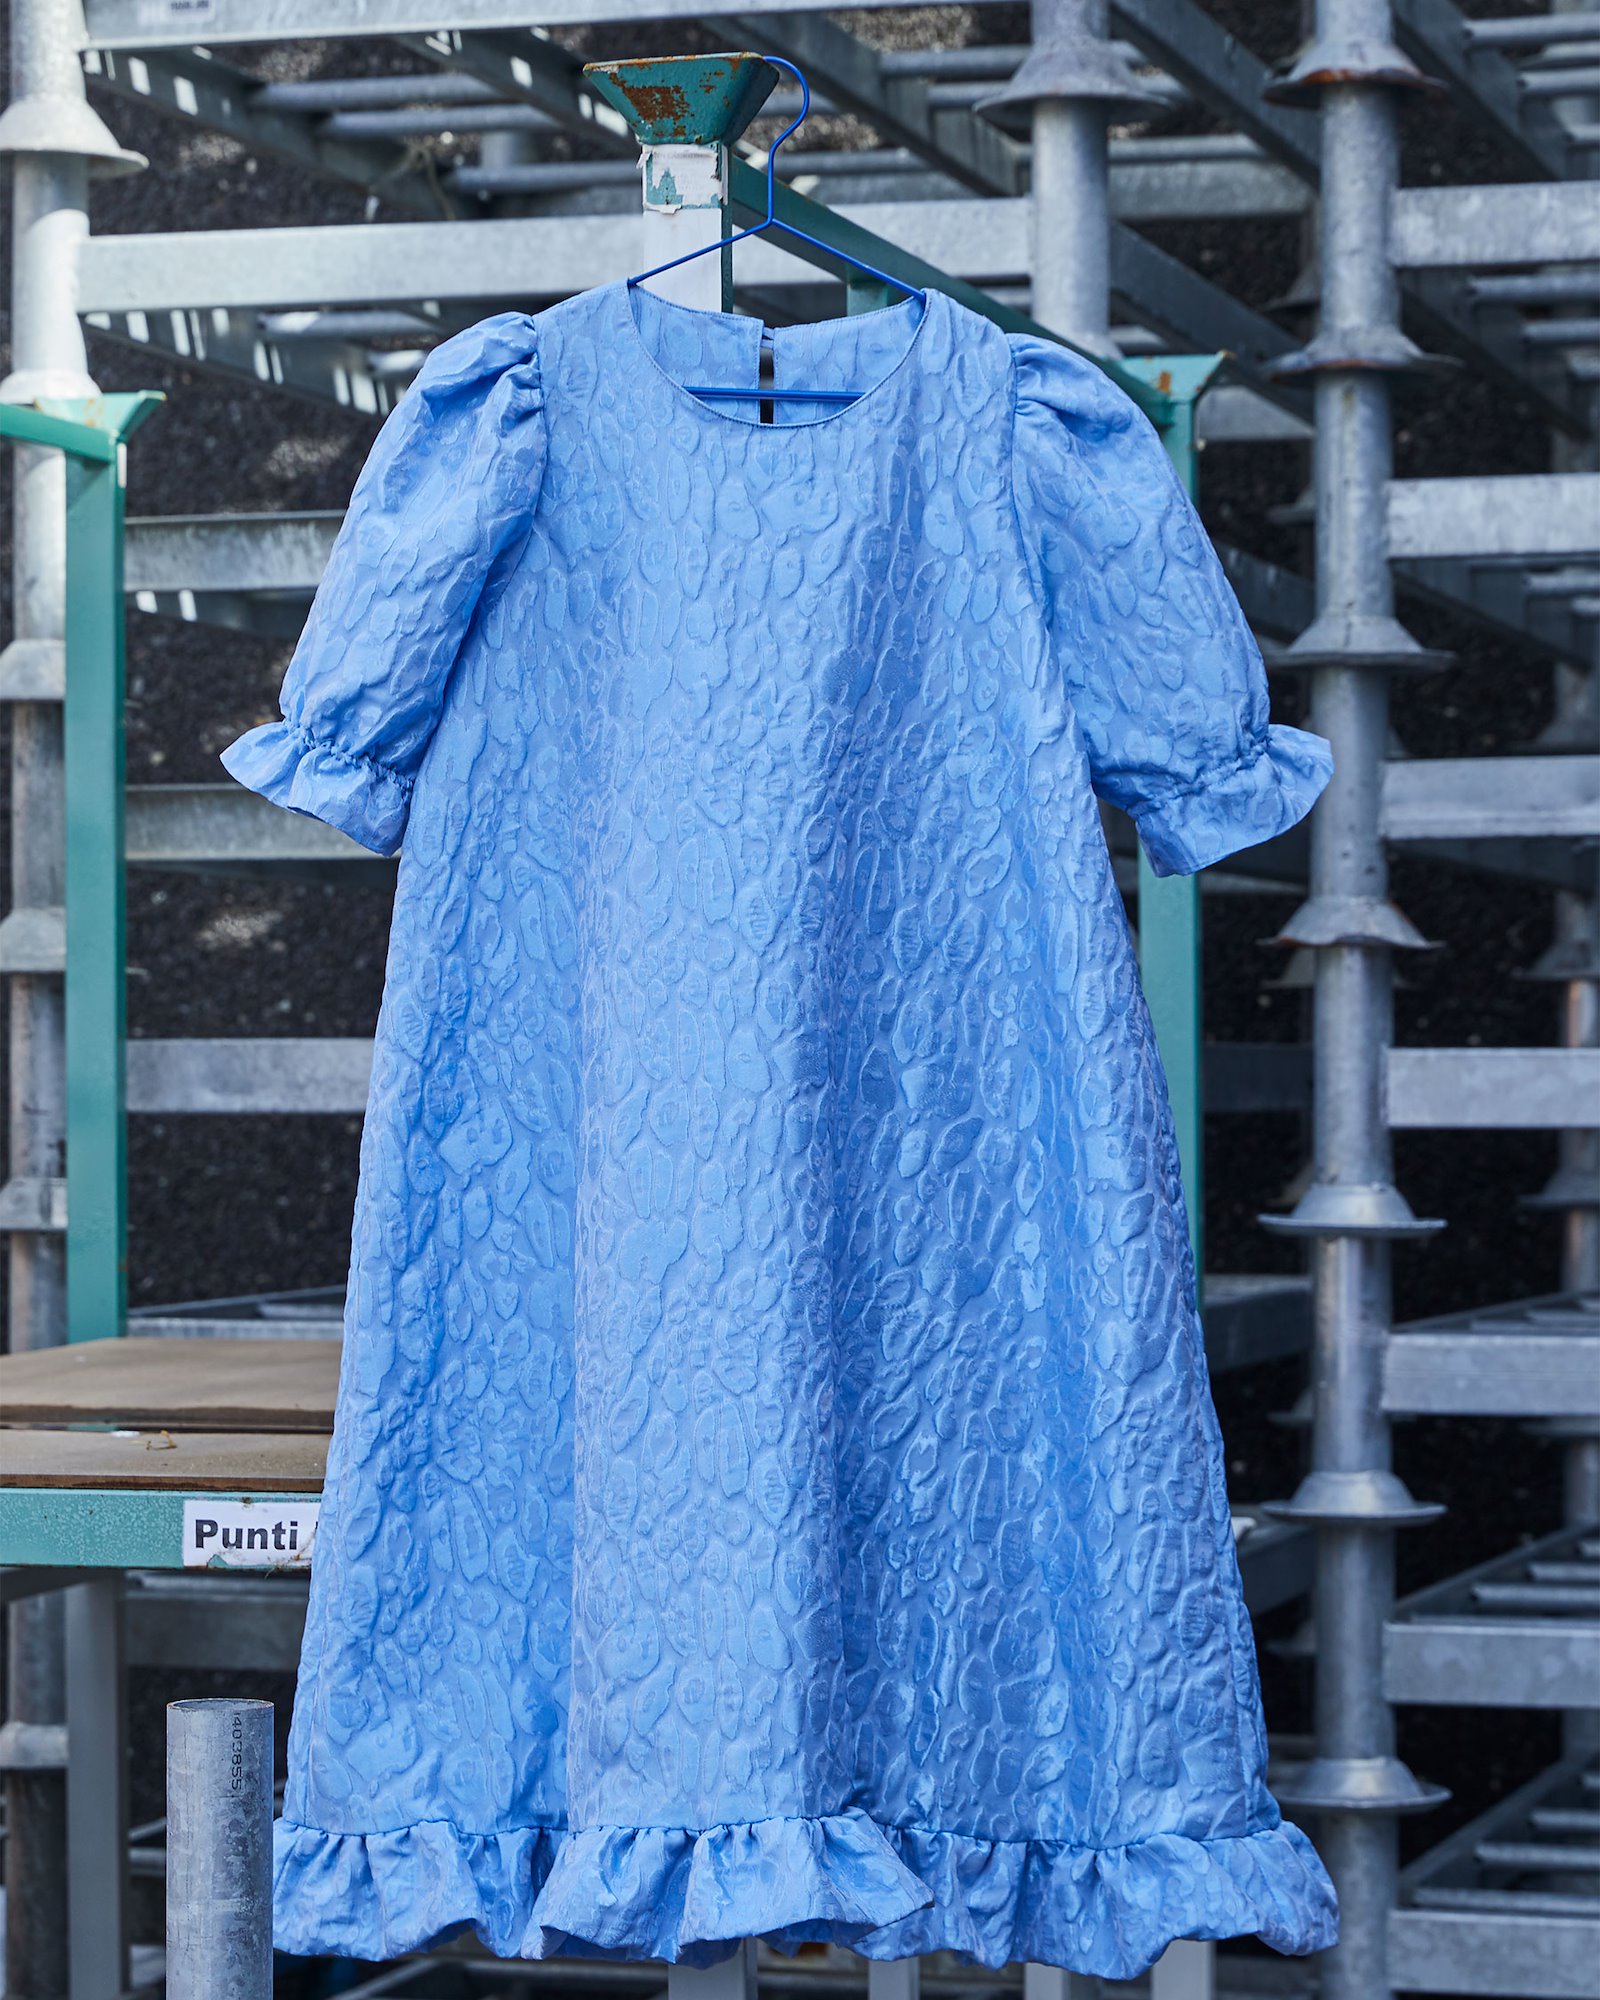 Eigenes Nähanleitung drucken: A-dress with puff sleeve #pernilledress DIY2401_pack.jpg